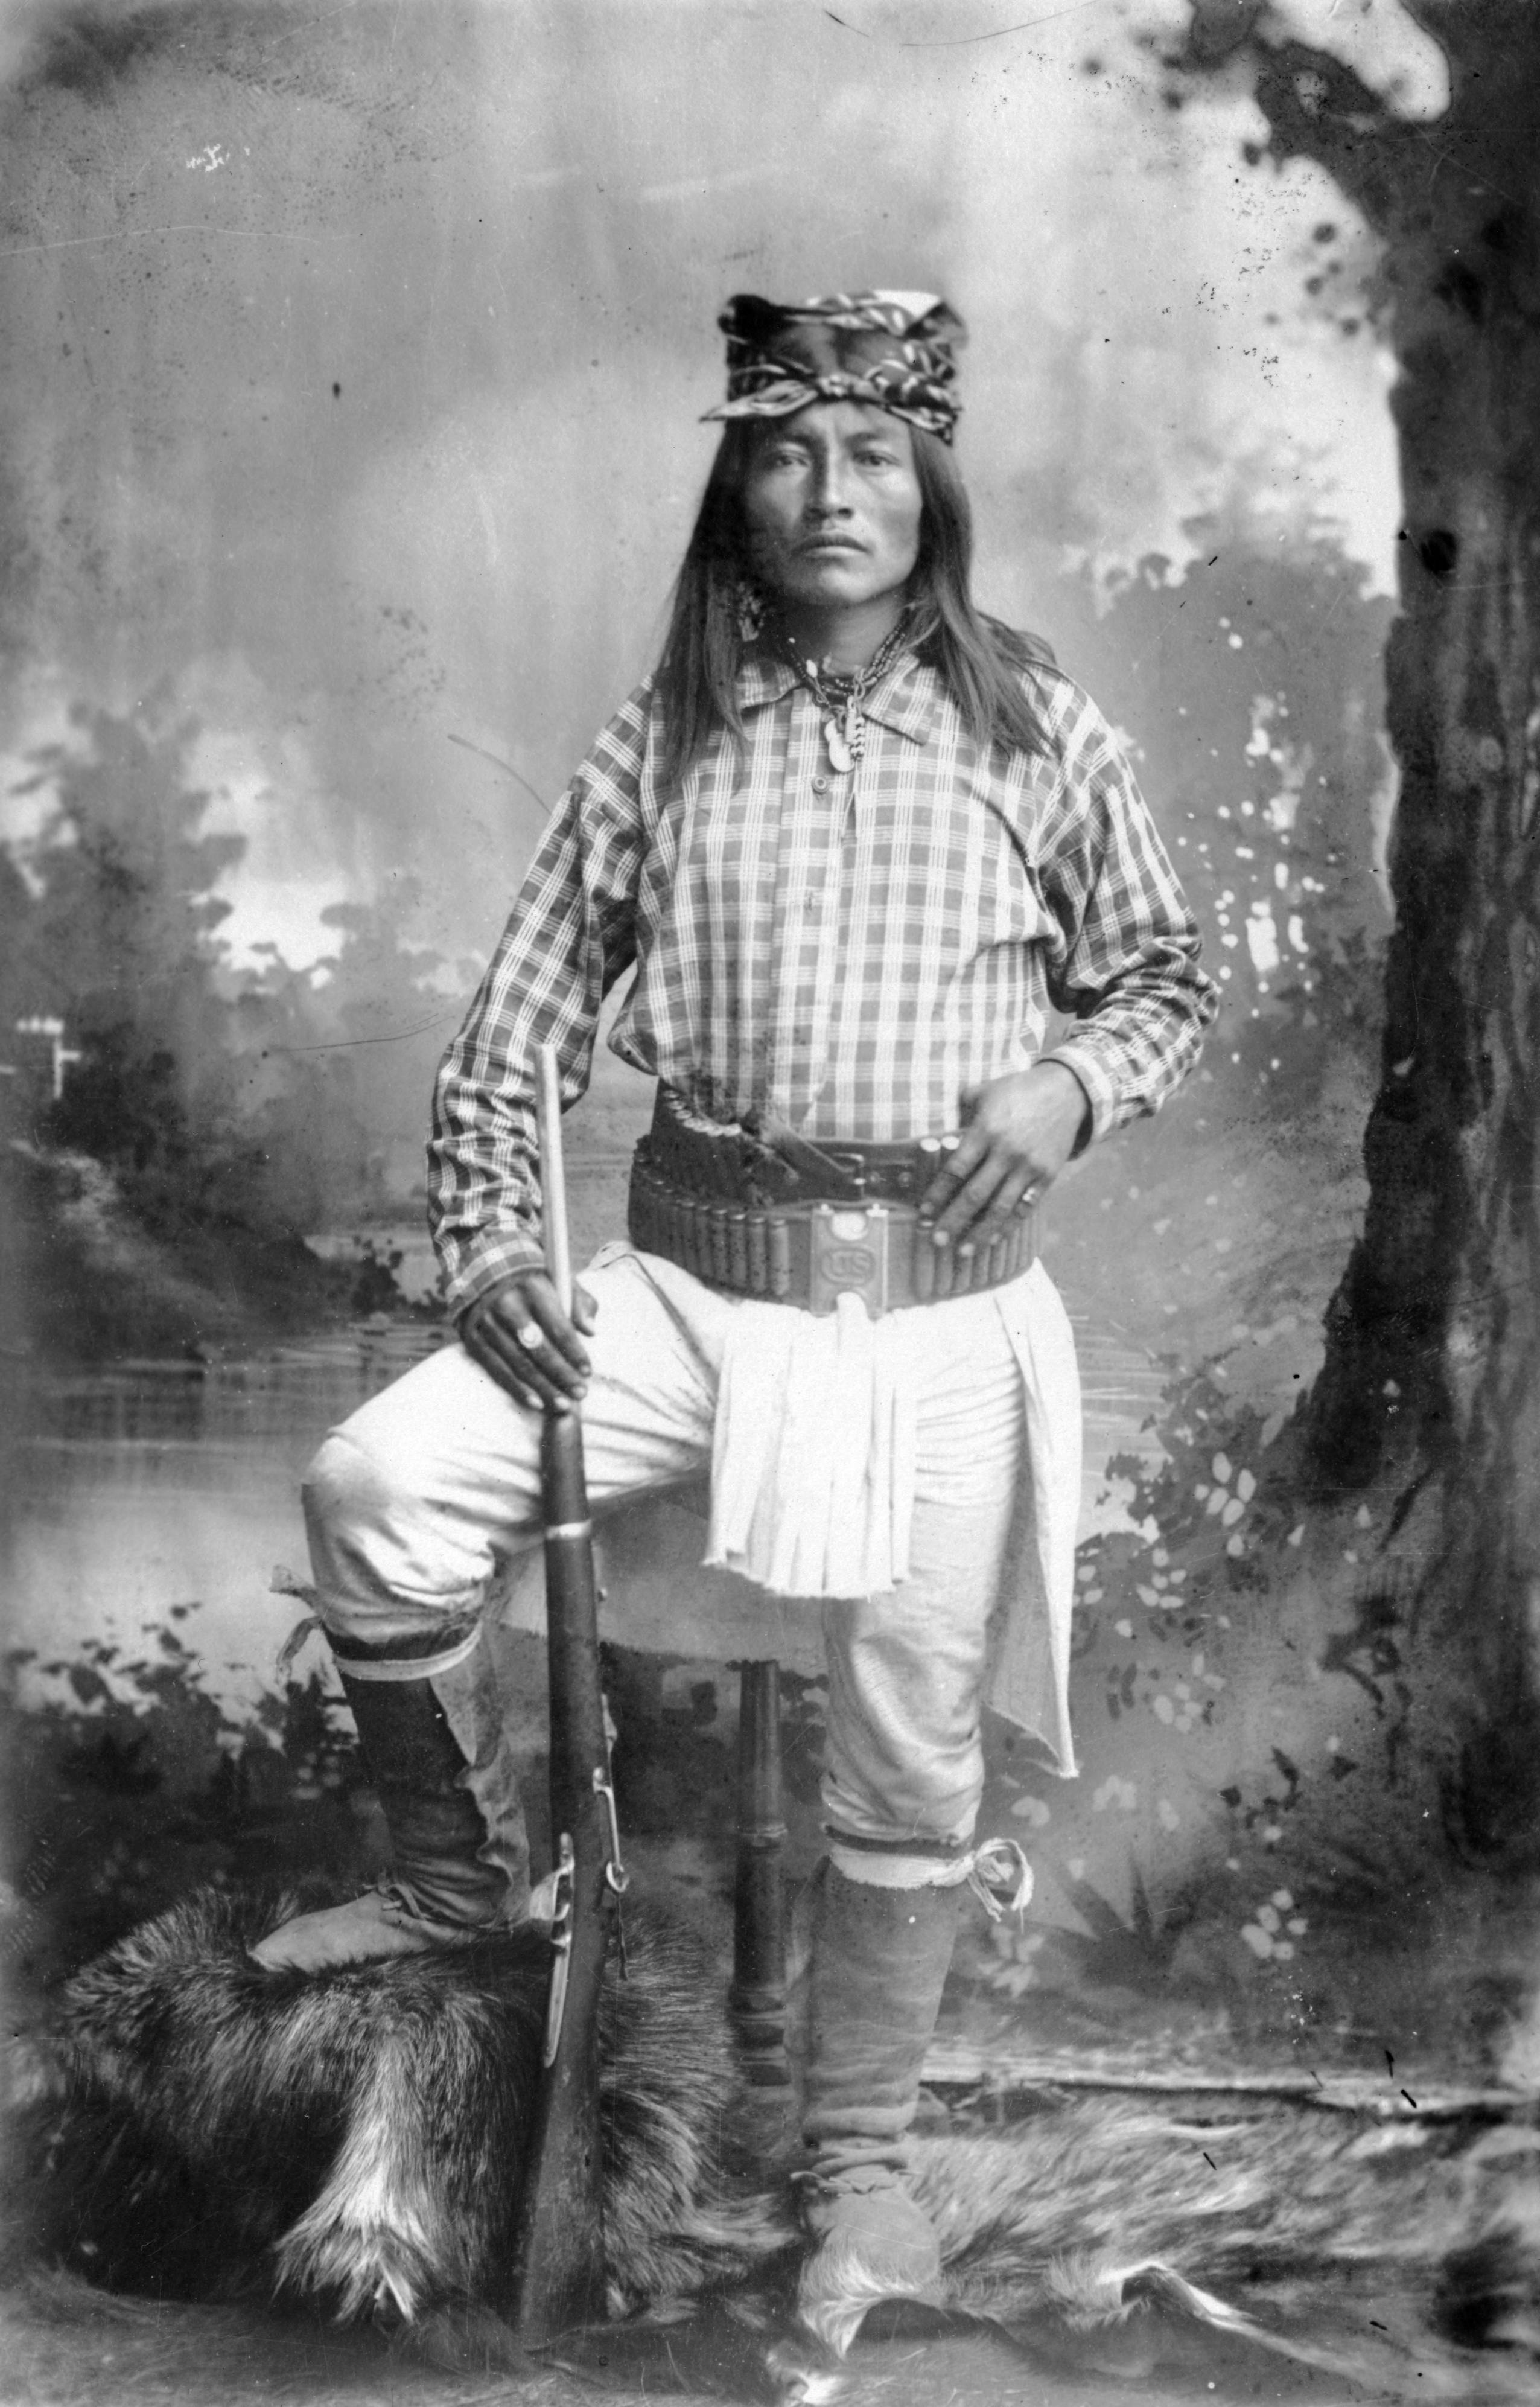 The Chiricahua Apache